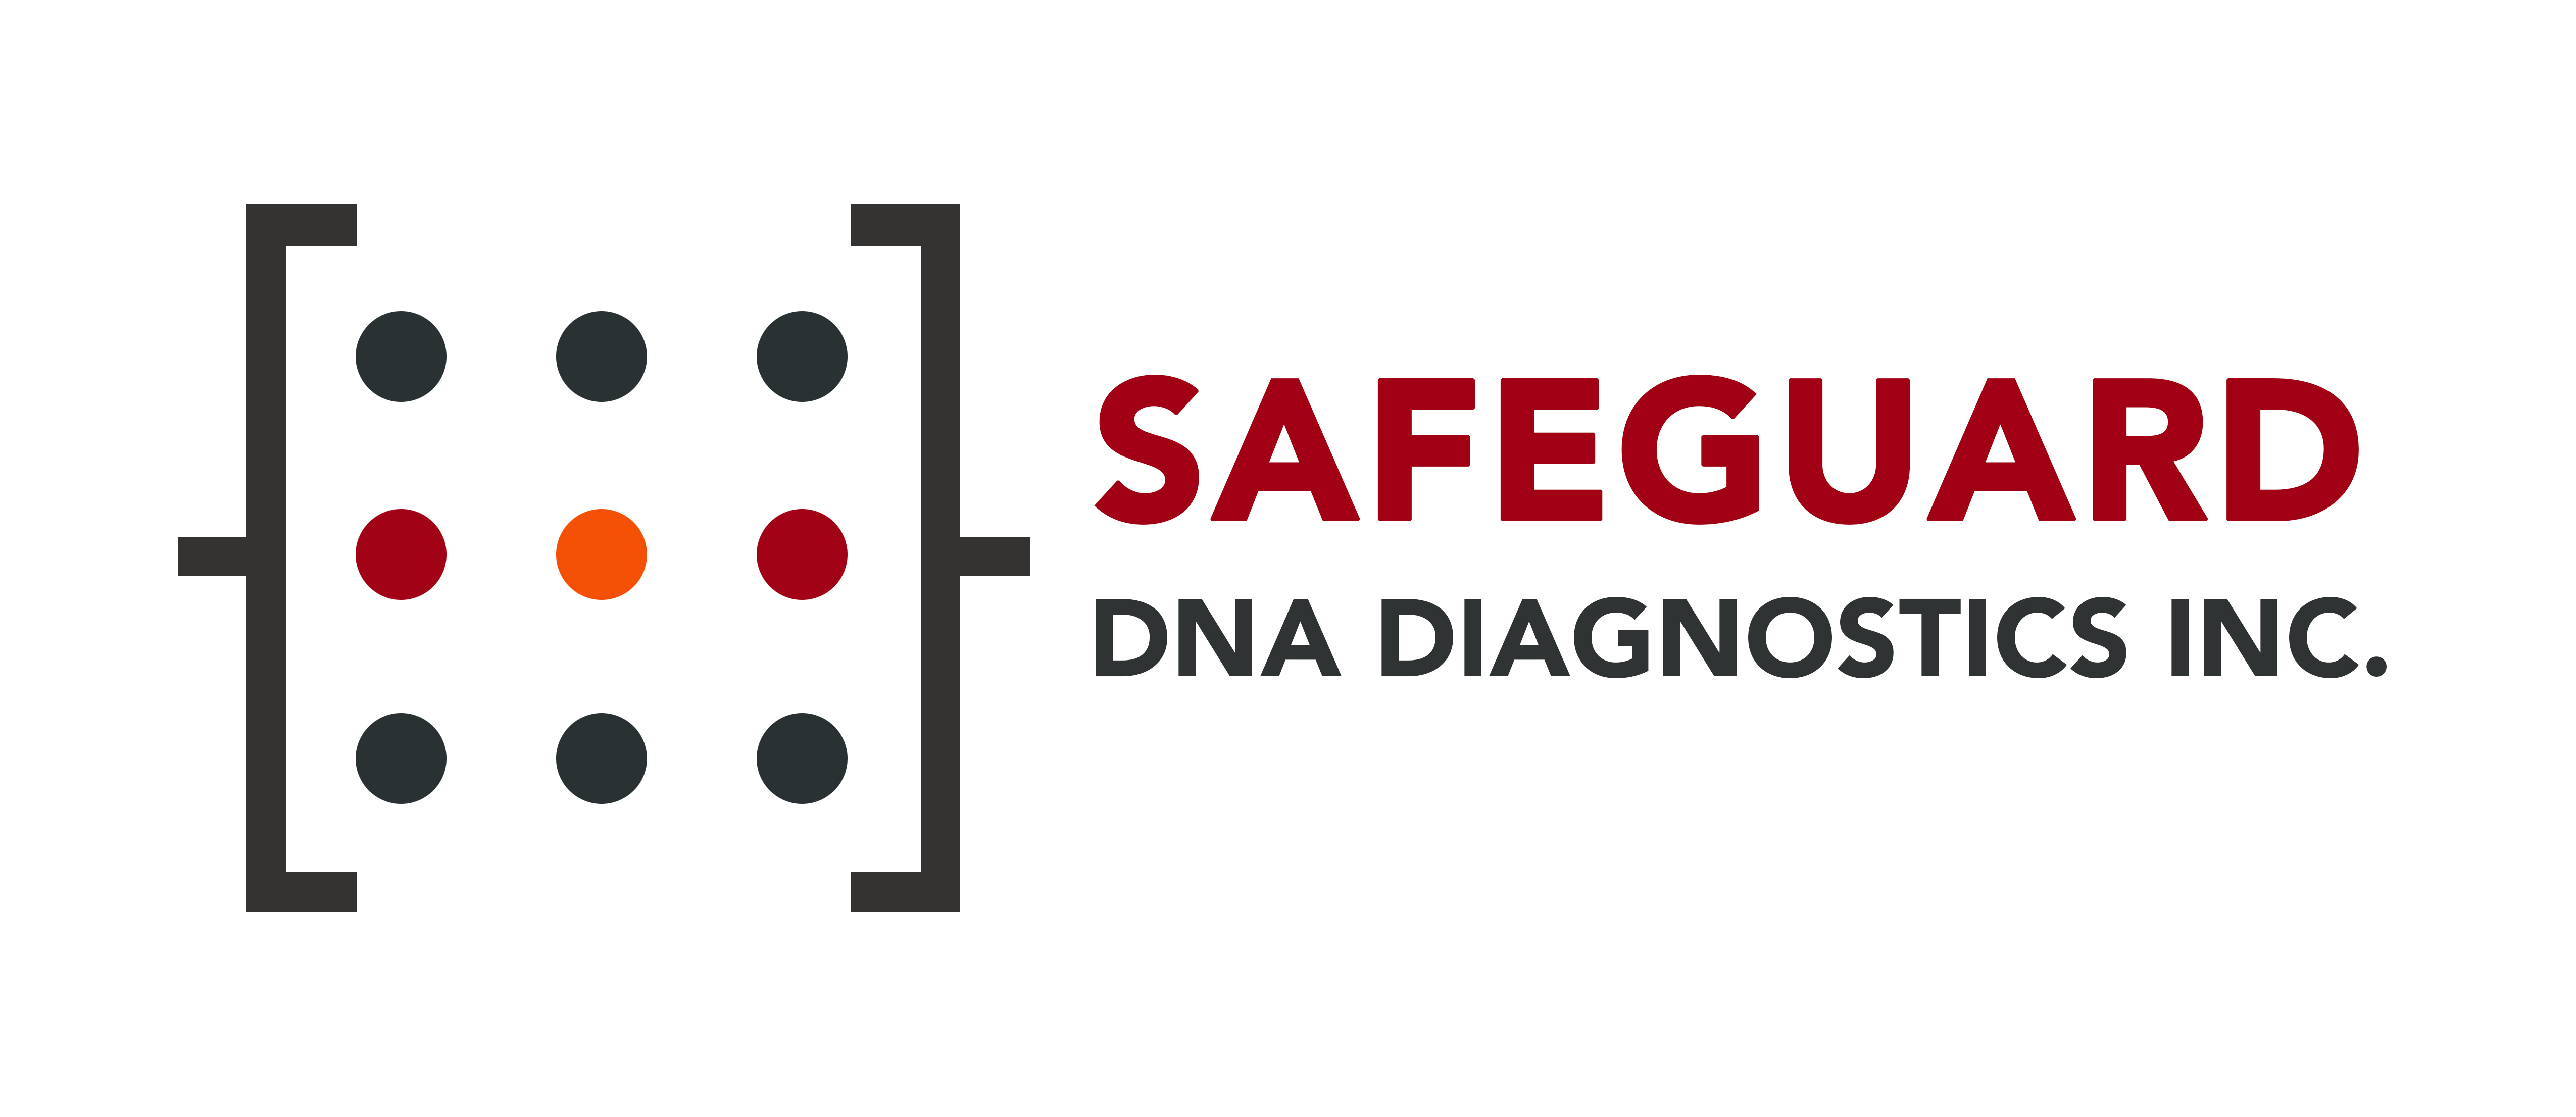 Safeguard DNA Diagnostics Inc.